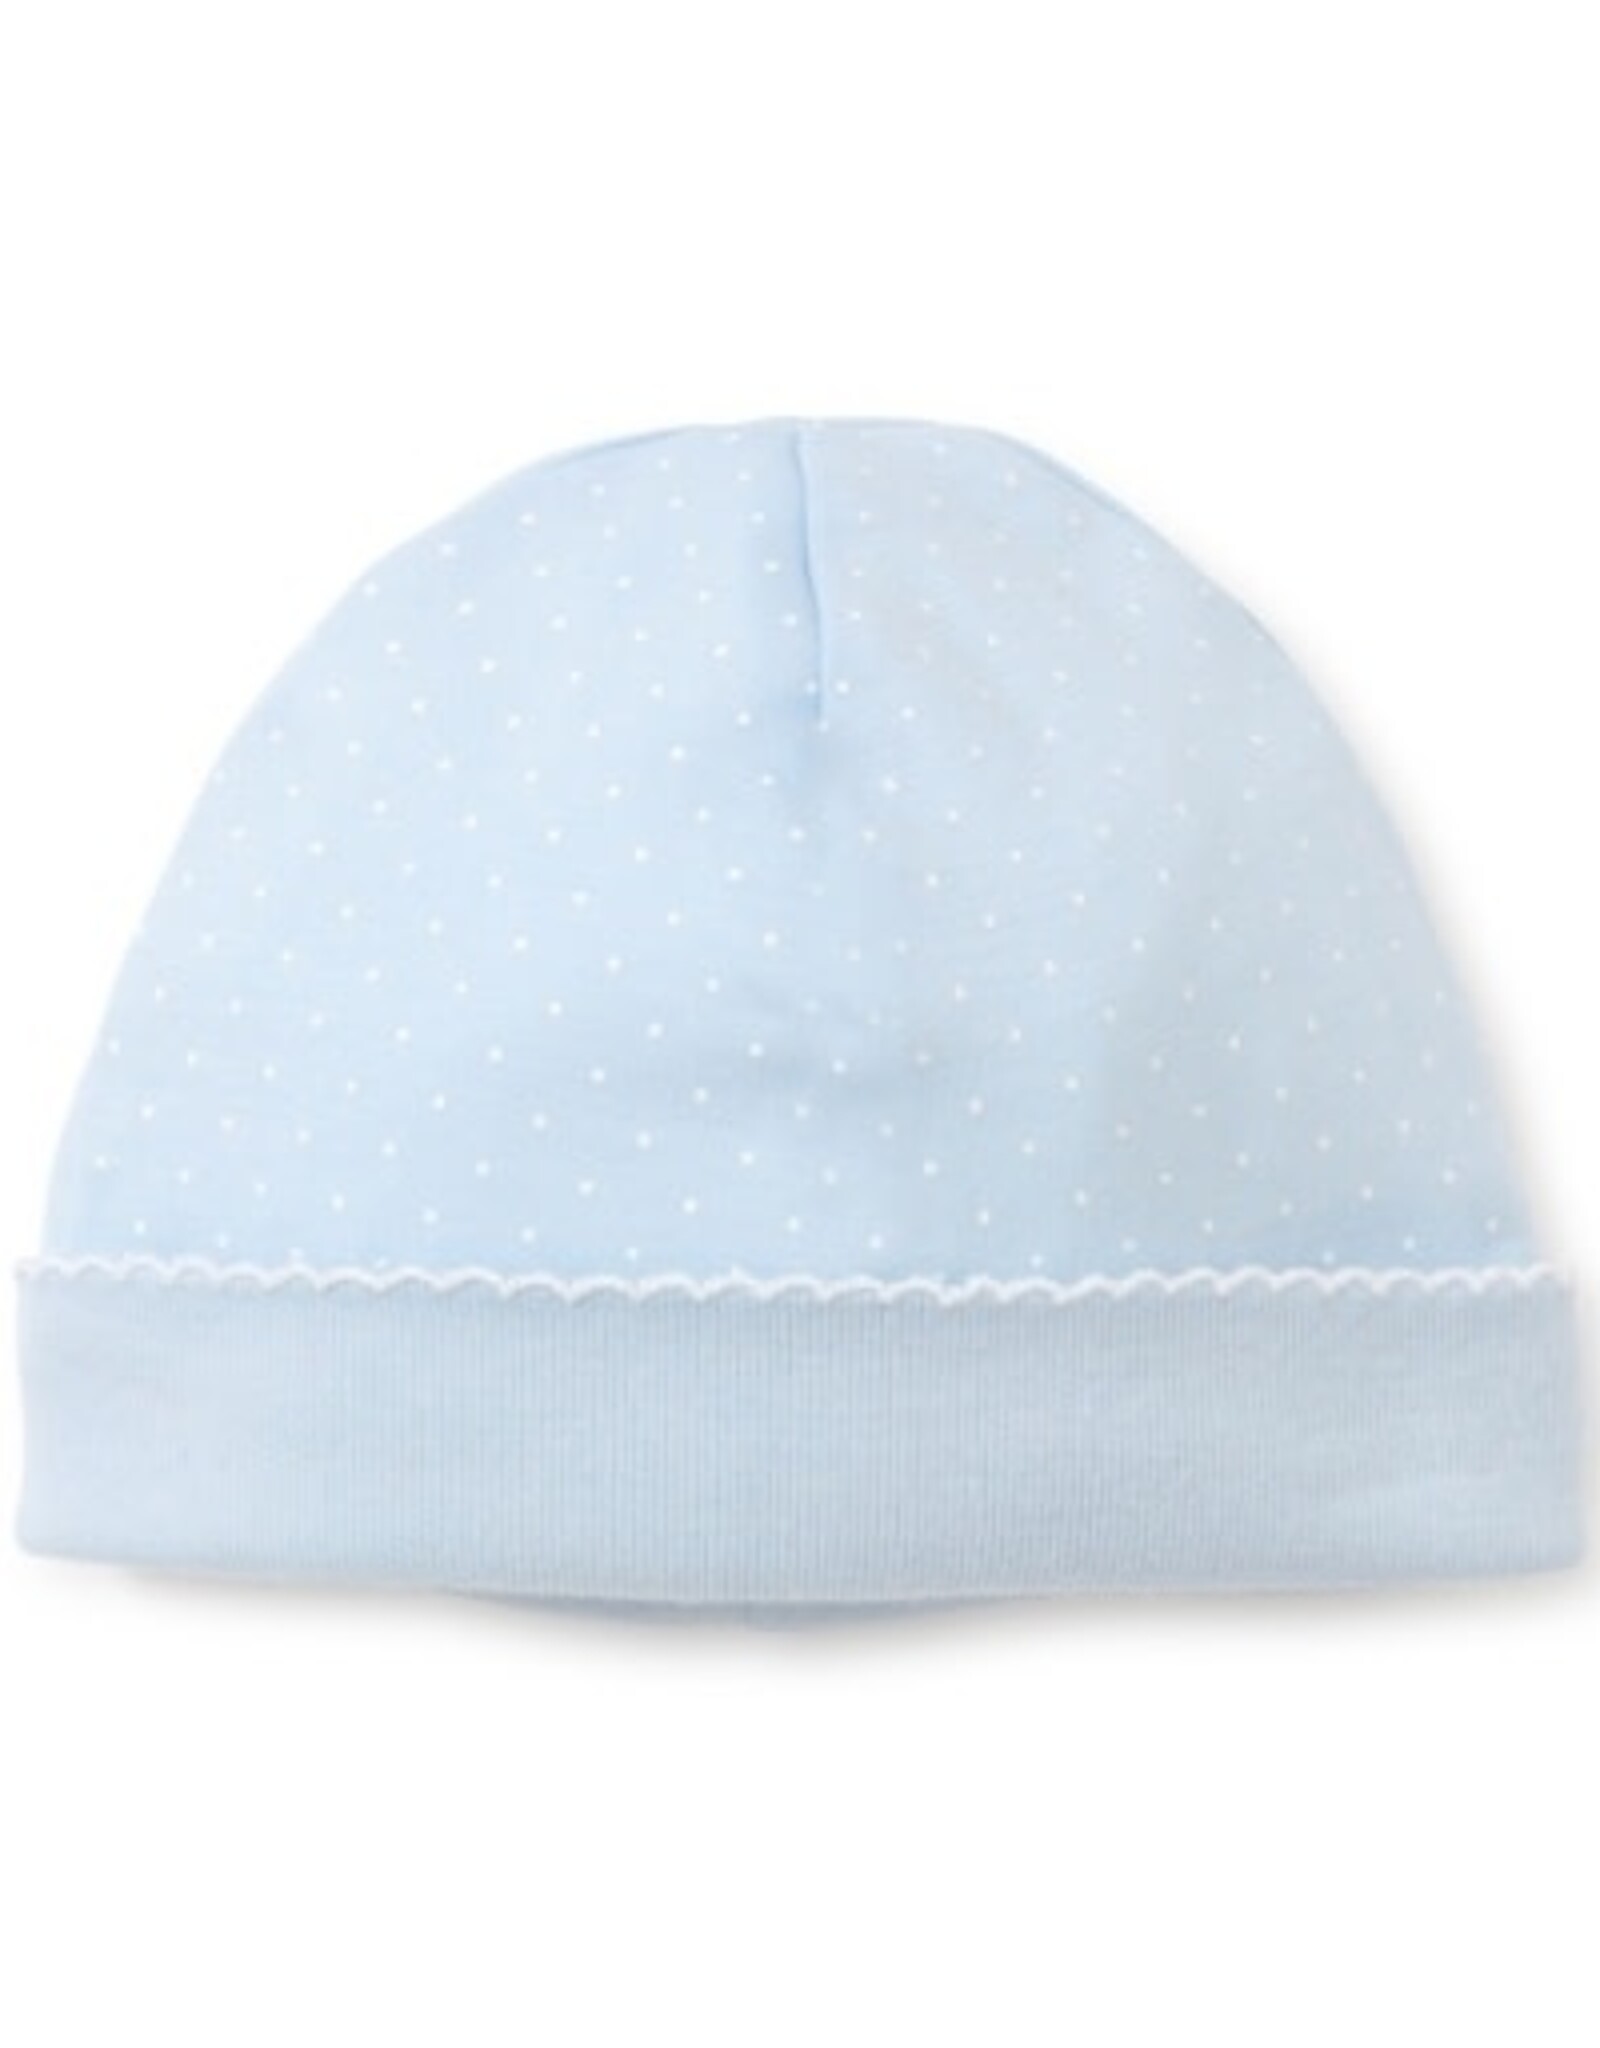 Kissy Kissy New Kissy Dots Print Hat, Lt Blue/White